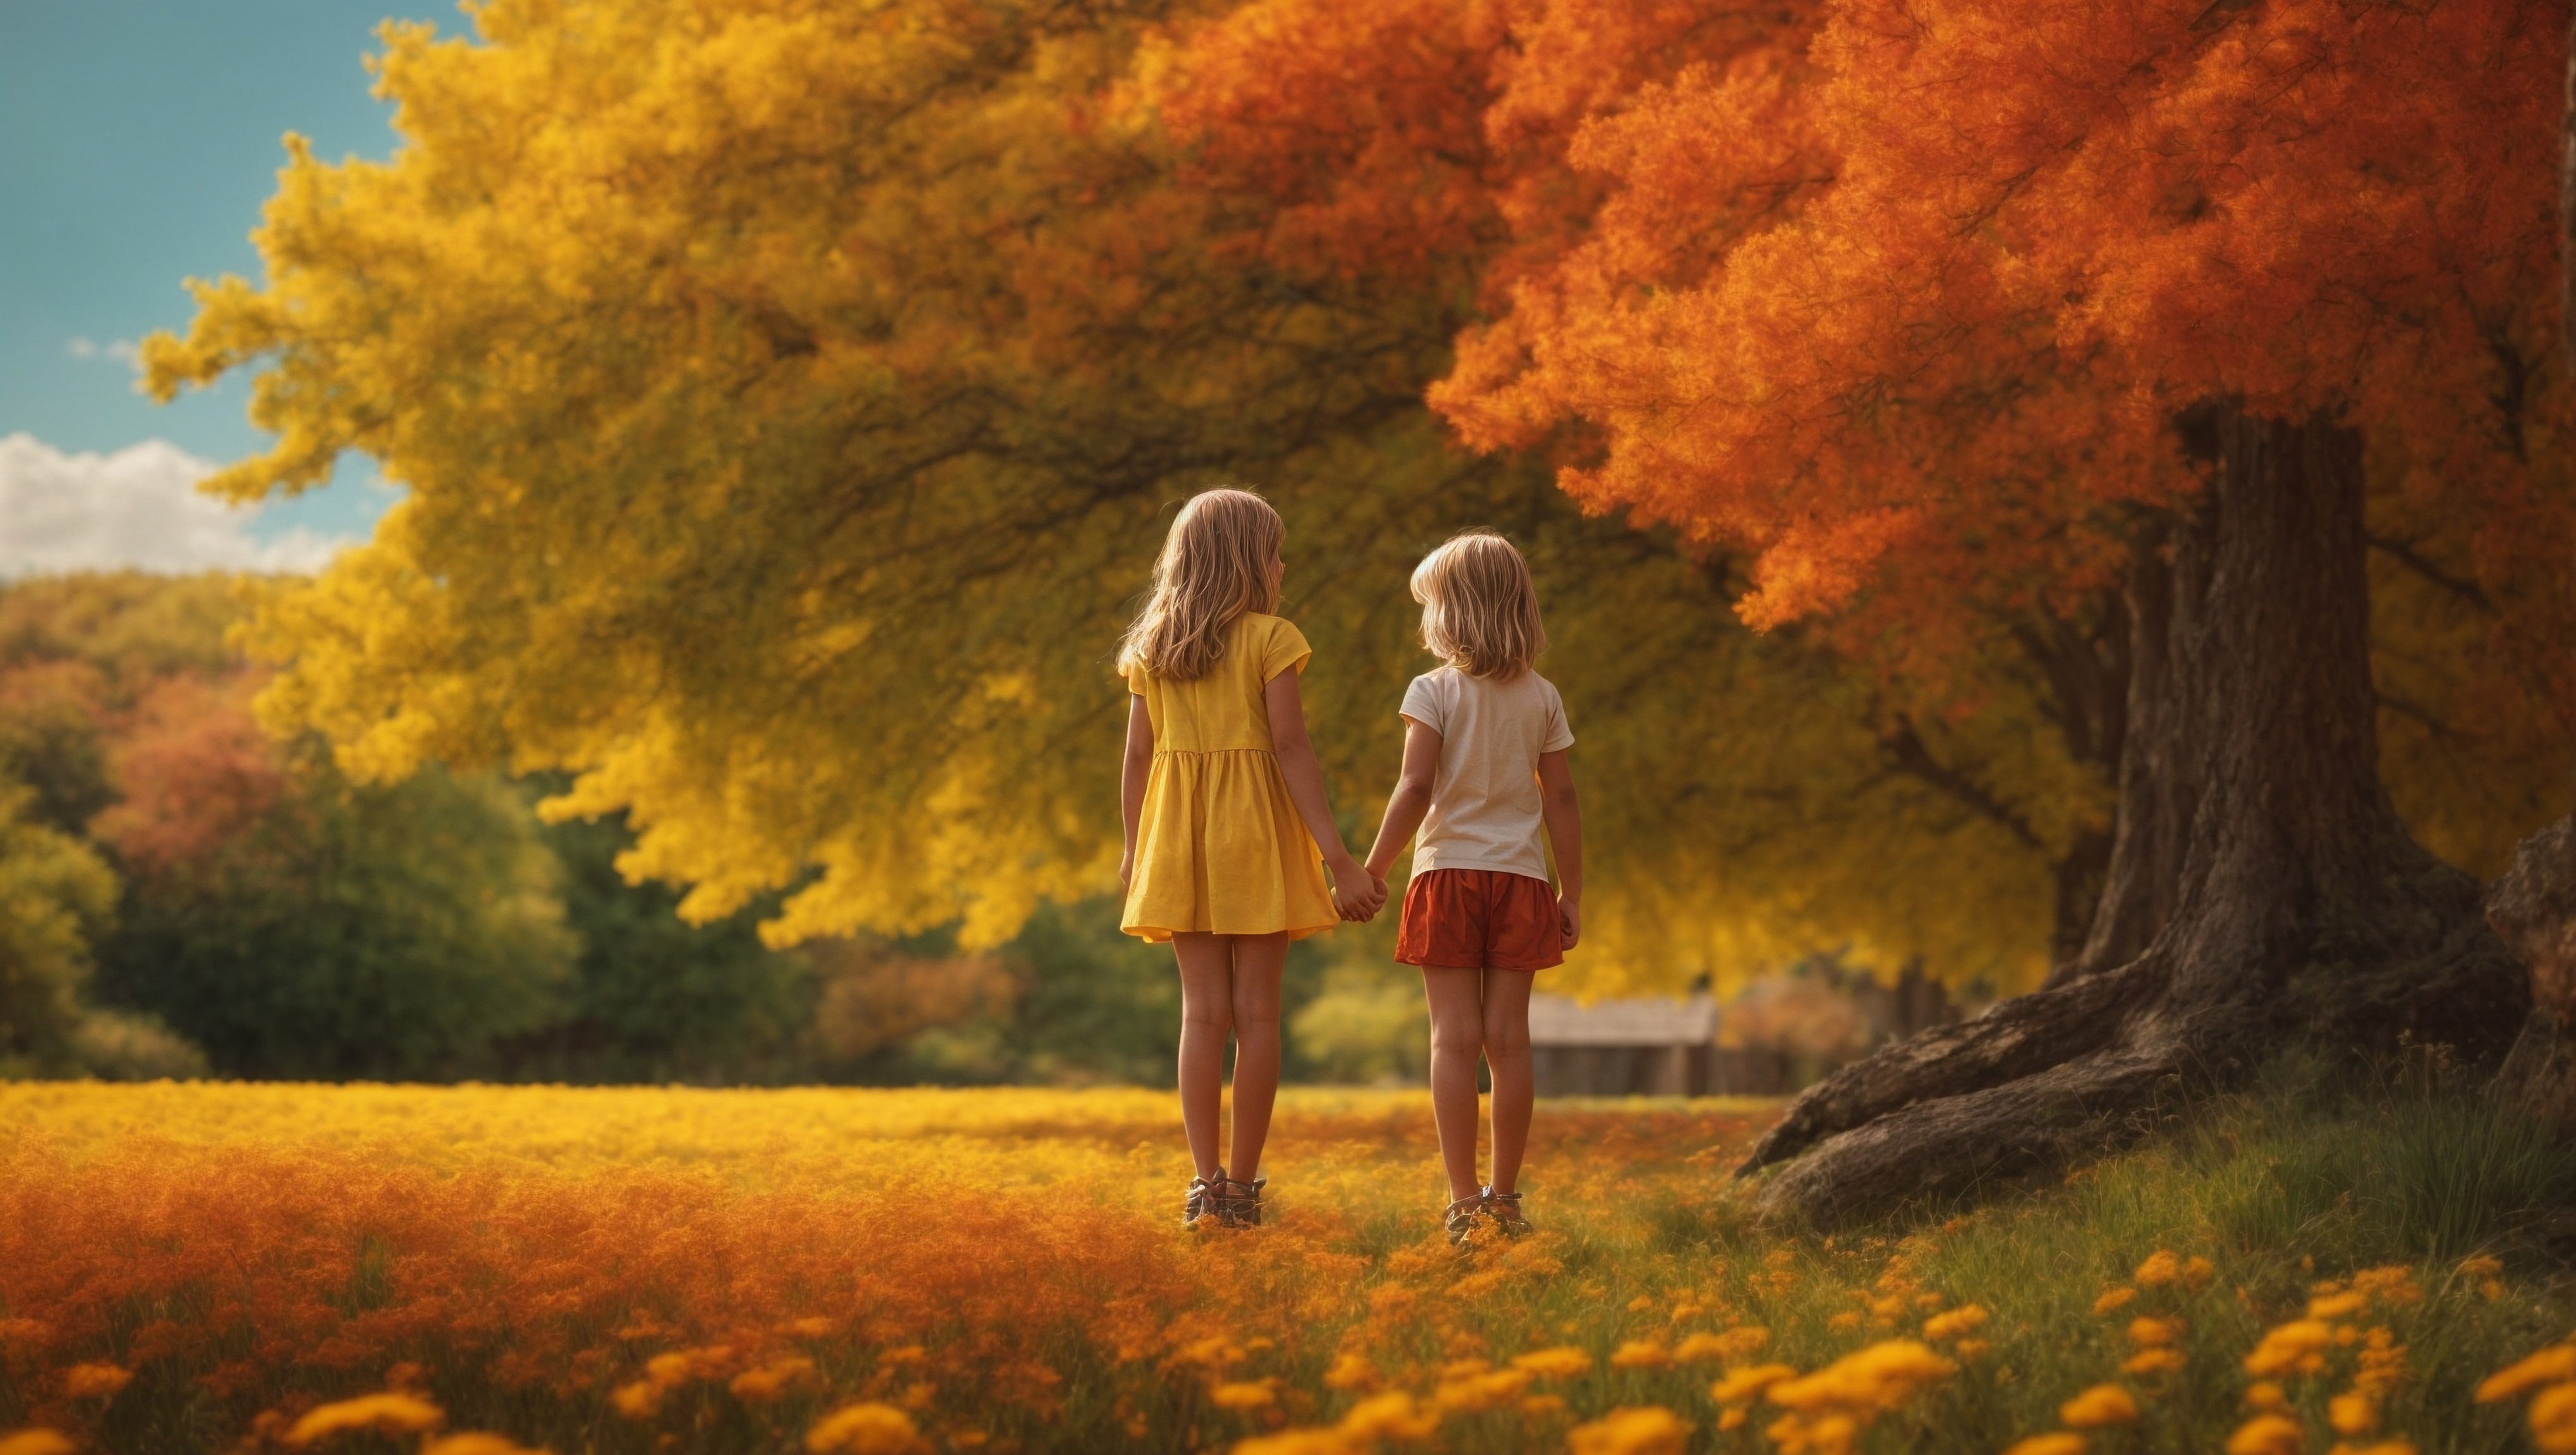 Бесплатное фото Две молодые девушки стоят на осеннем поле с желтыми цветами.